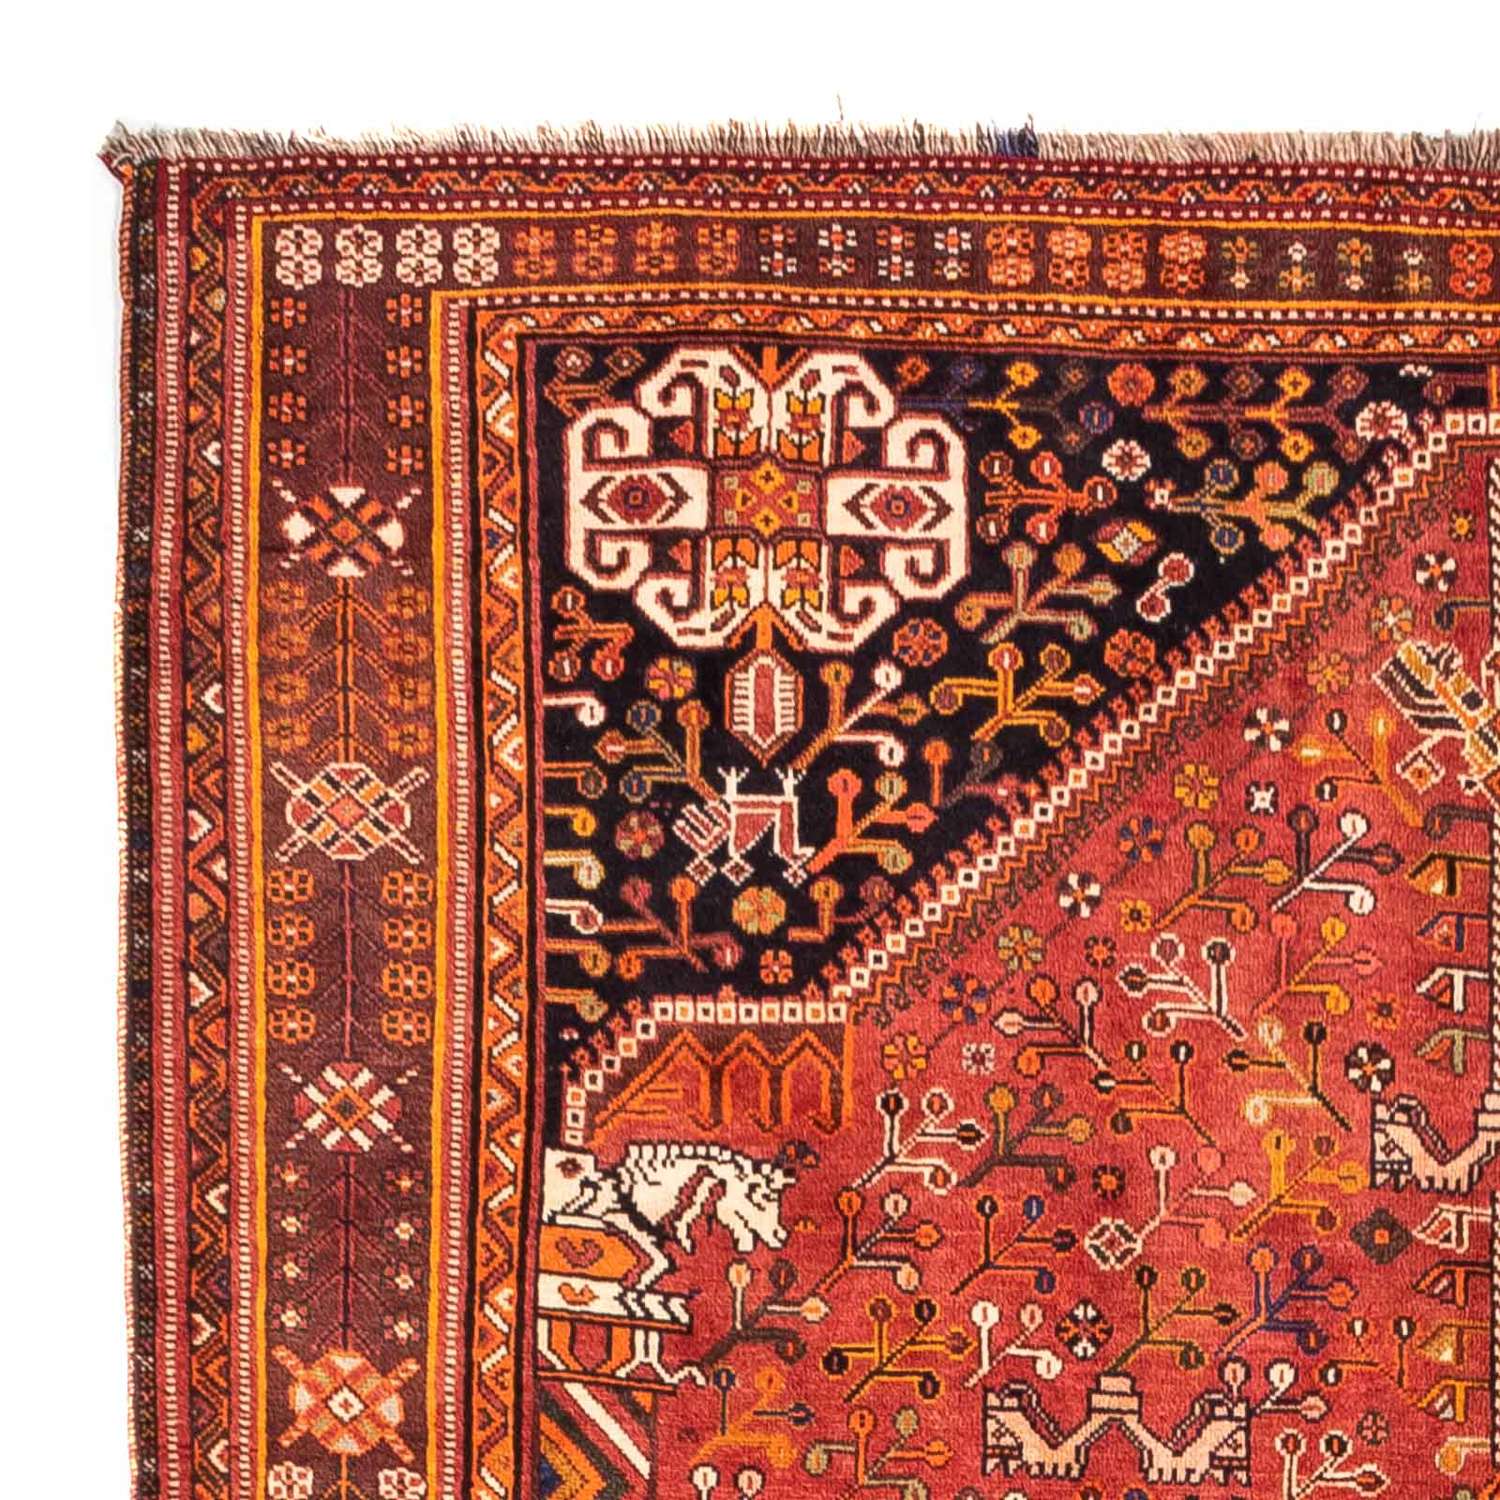 Persisk teppe - Nomadisk - 255 x 162 cm - rød